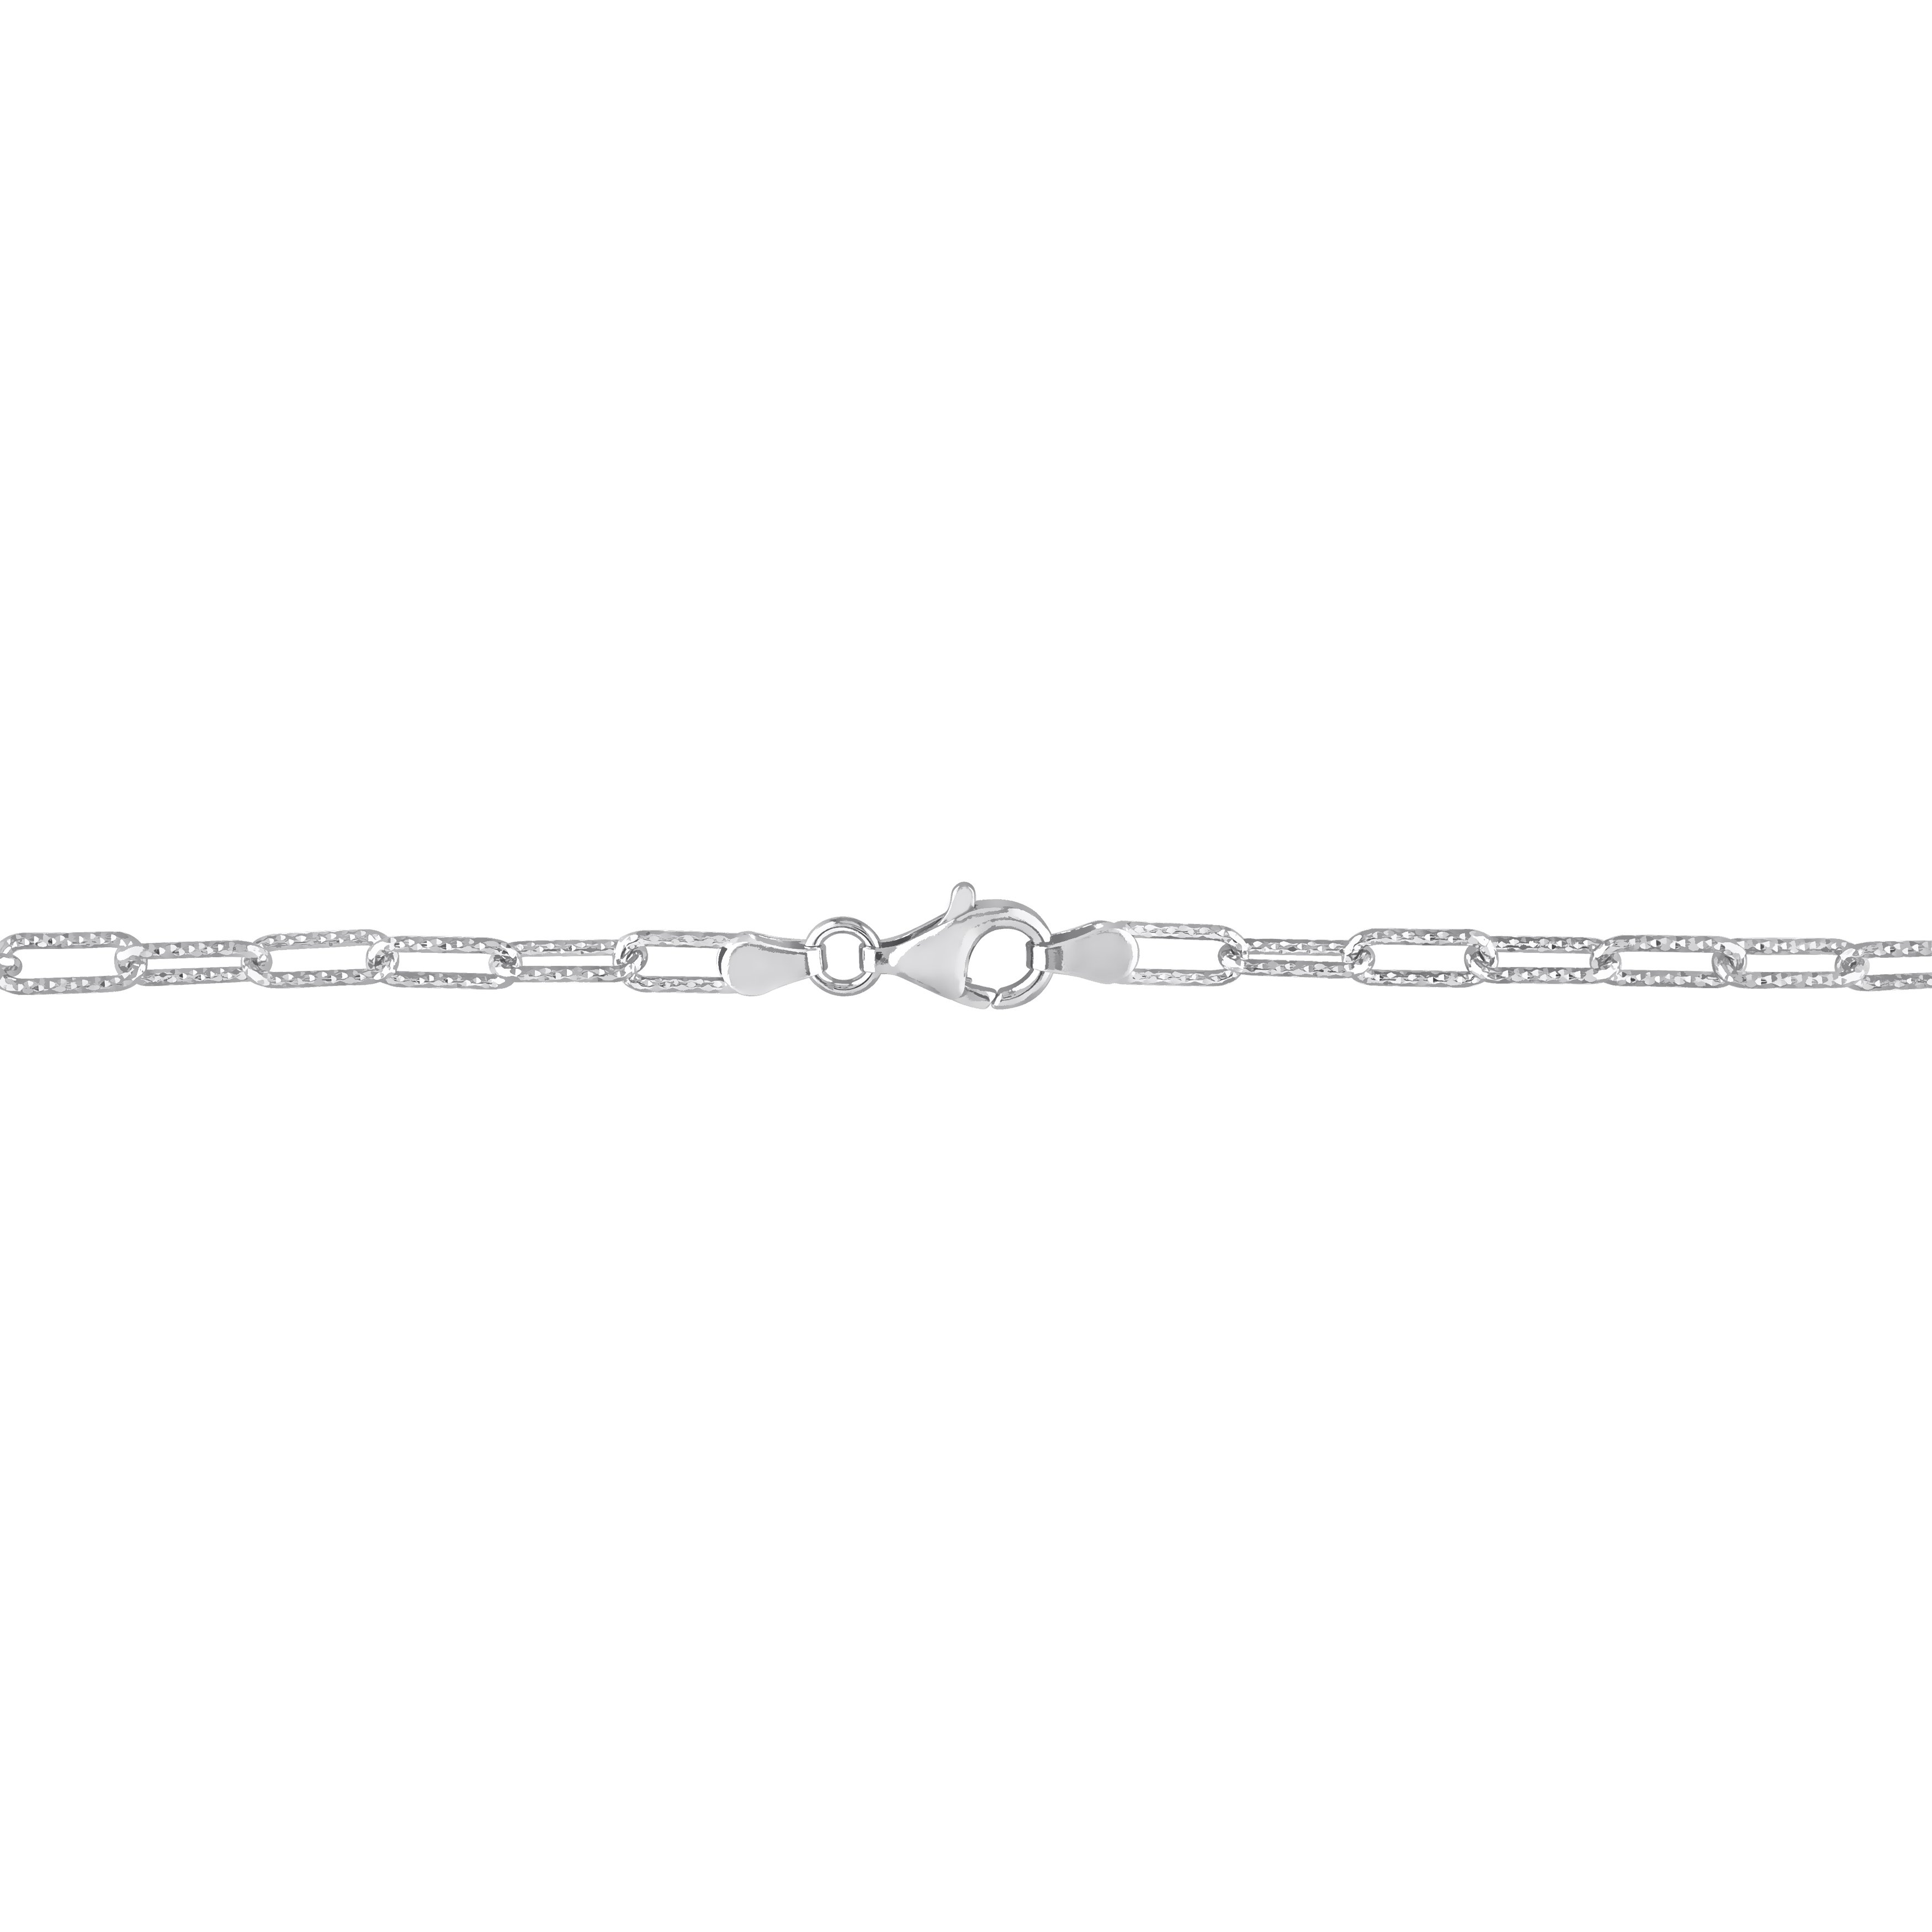 3.5mm Fancy Cut Paperclip Chain Bracelet in Sterling Silver - 9 in.